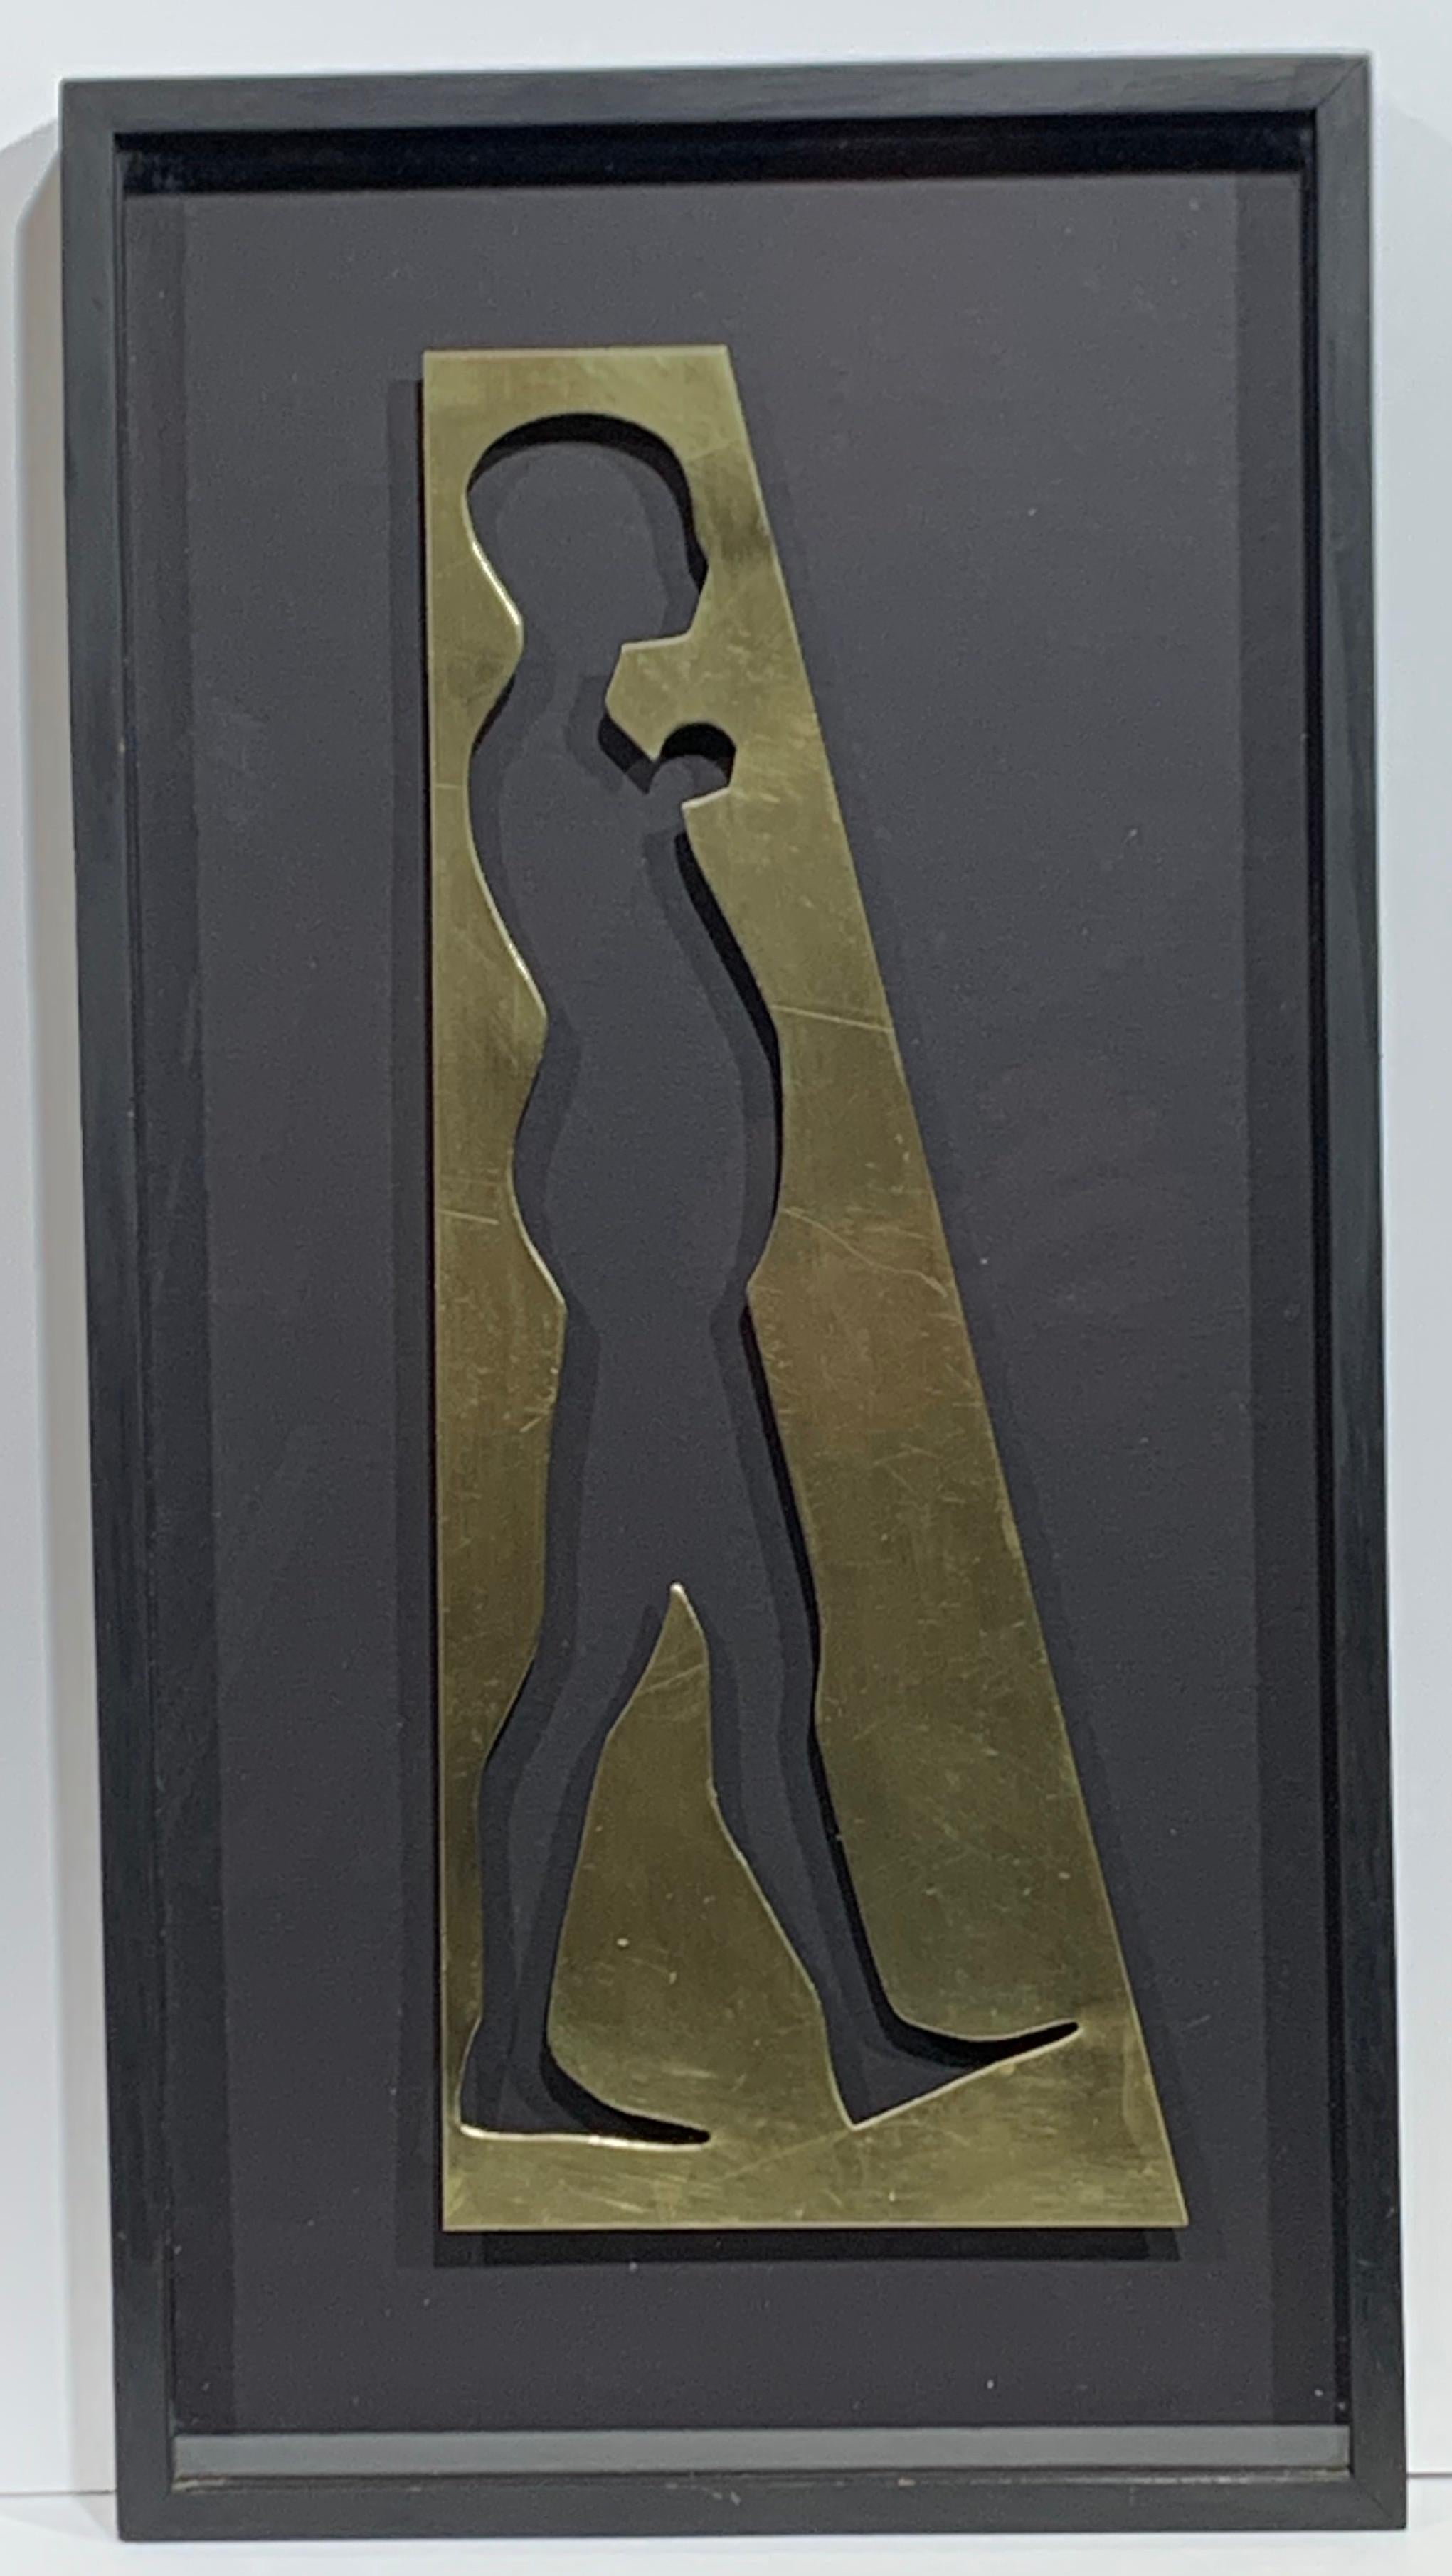 Walking Man mit Schnalle – Sculpture von Ernest Trova